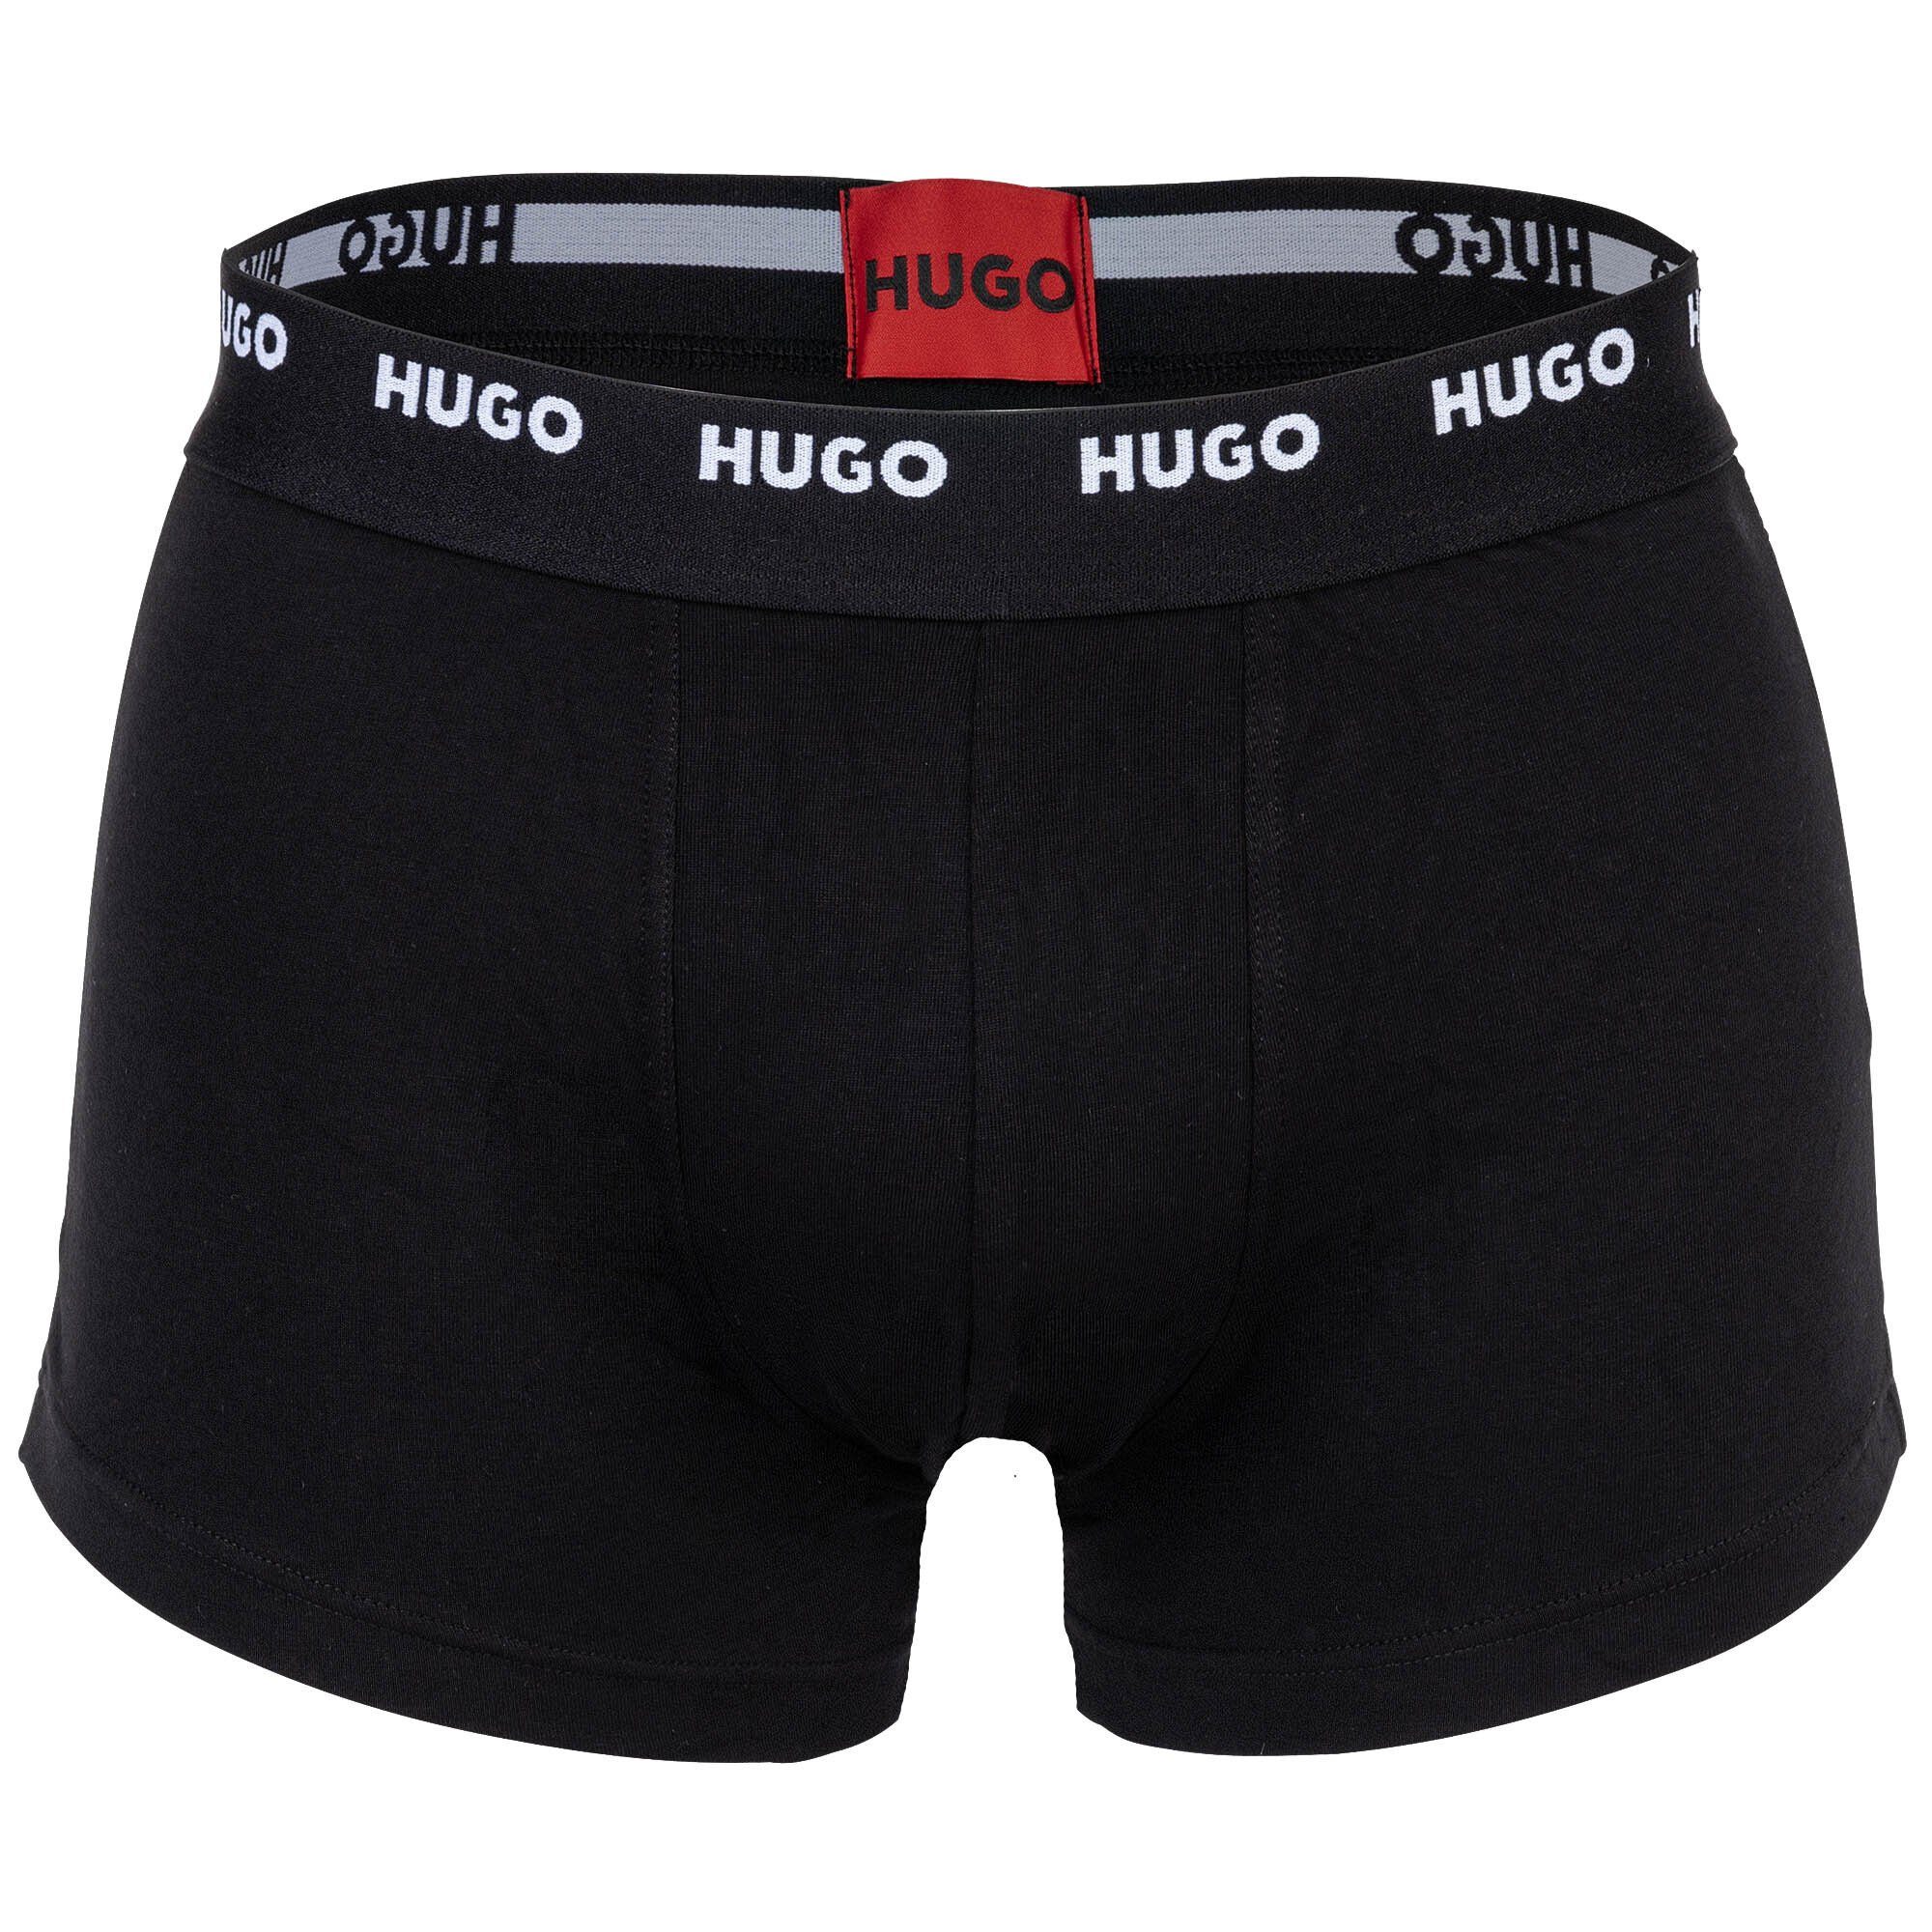 Trunks 5er HUGO Herren - Shorts, Pack Pack Five Schwarz/Rot/Weiß Boxer Boxer